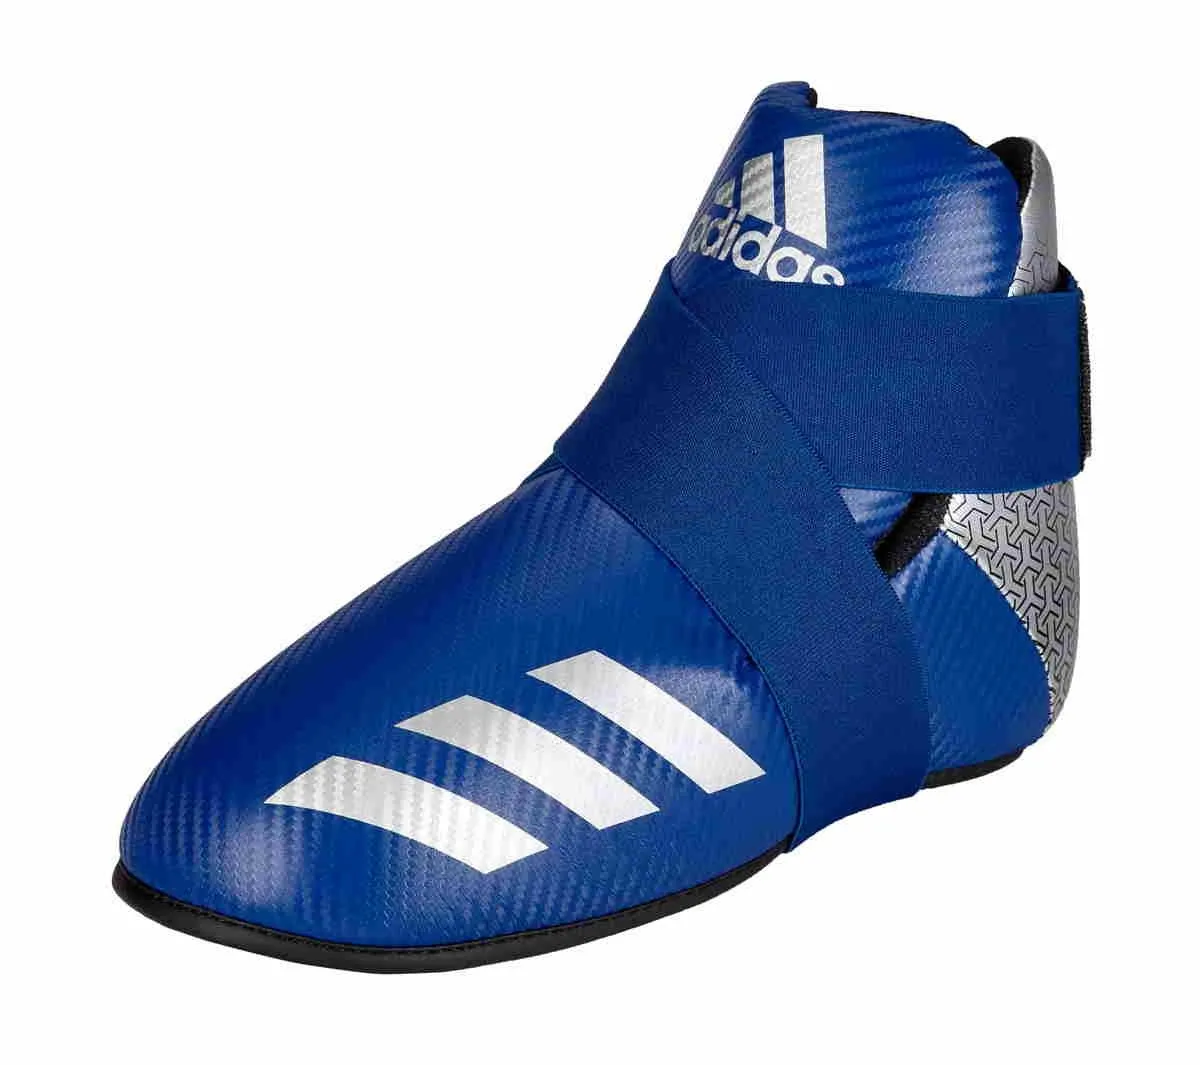 adidas Pro Kickboxen Fußschutz 300 blau|silber